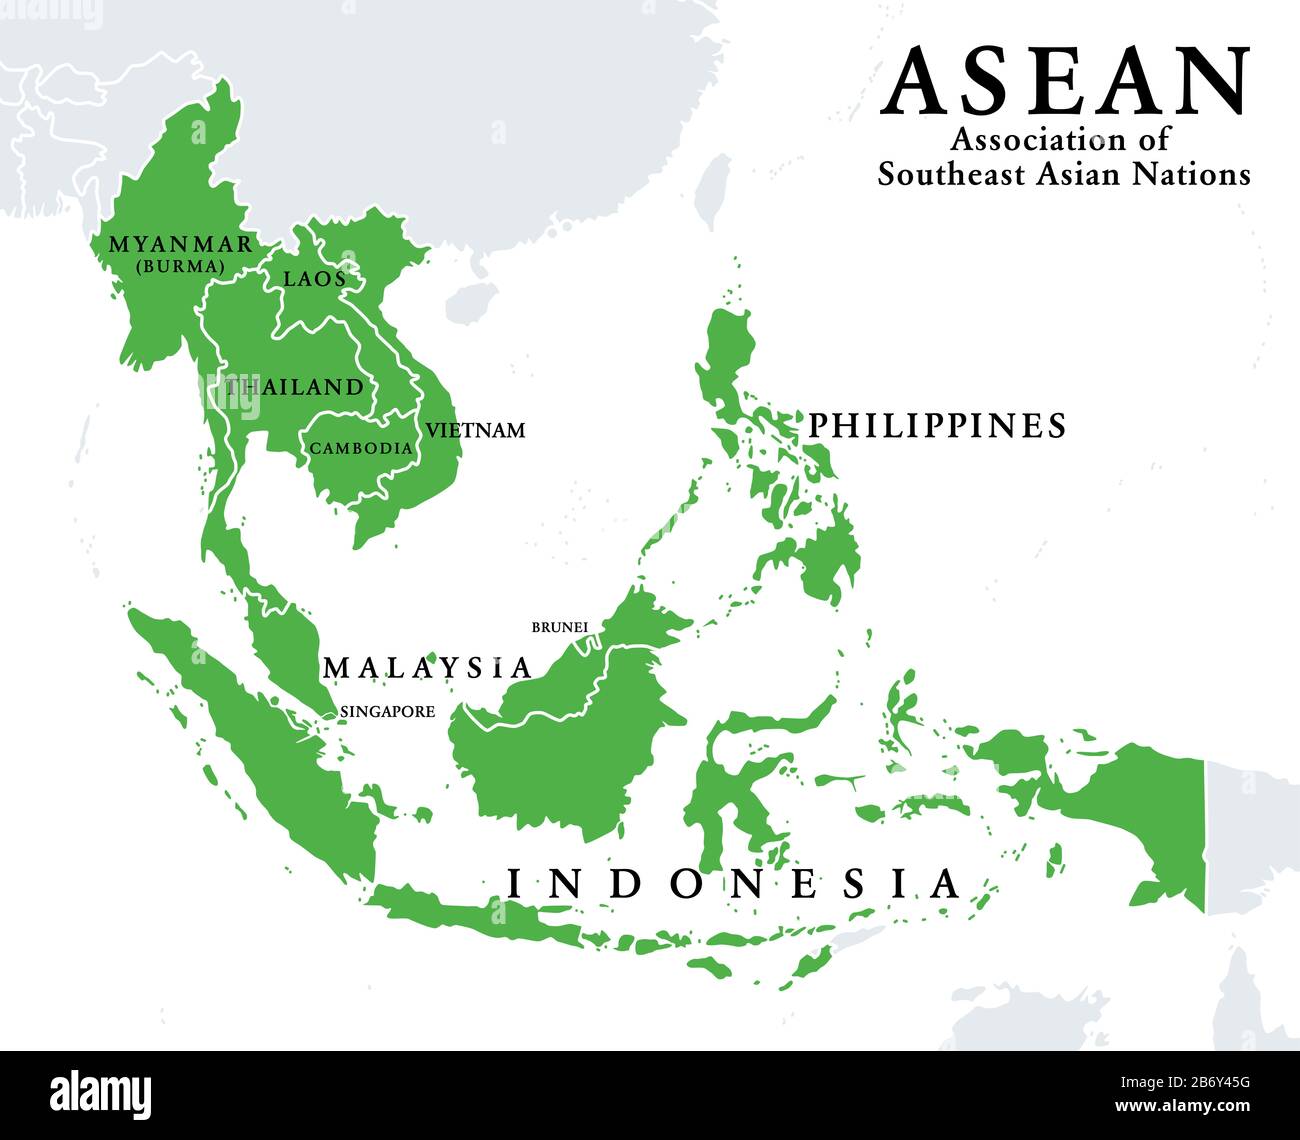 stati membri dell'ASEAN, infografica e mappa. Associazione delle Nazioni del Sud-Est Asiatico, un'organizzazione intergovernativa regionale con 10 paesi membri. Foto Stock